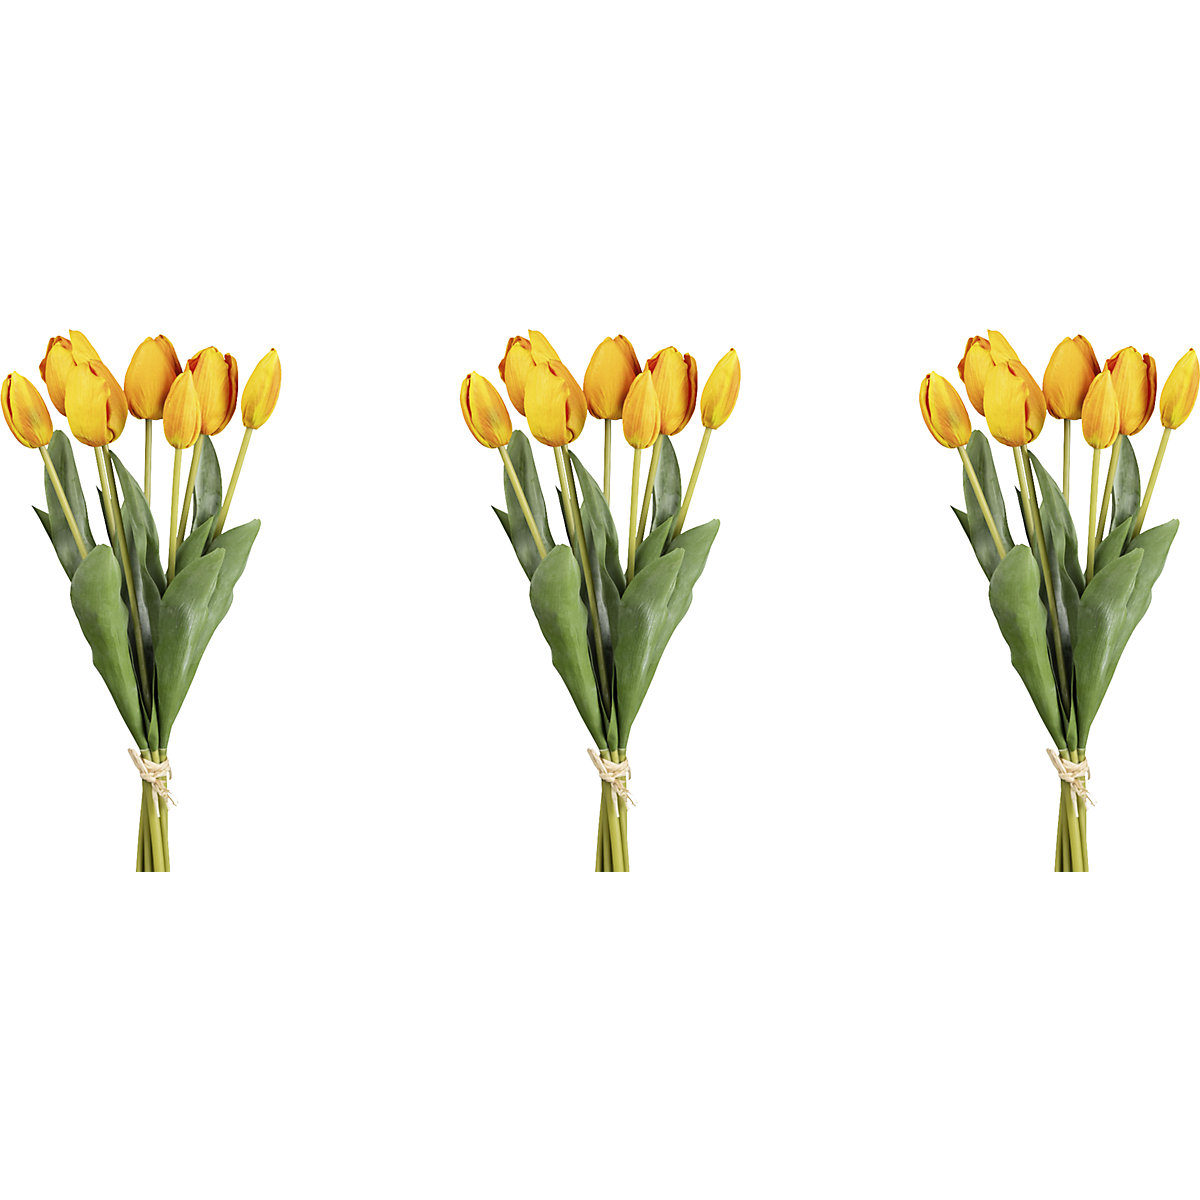 Ramo de 7 tulipas